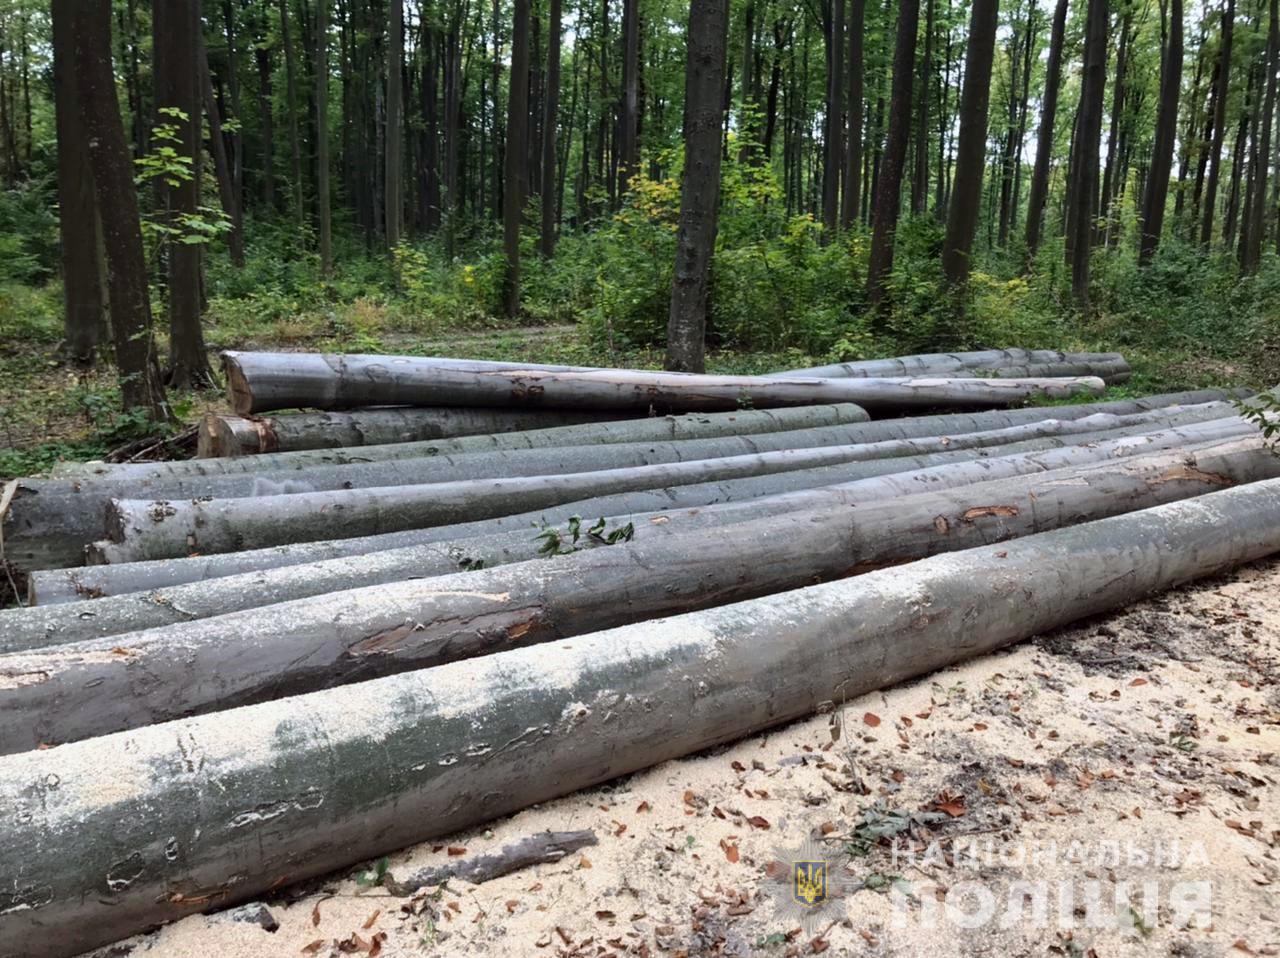 Двоє буковинців незаконно вирубали дерева дуба, бука та клену у лісах Чернівецького району на чверть мільйона гривень